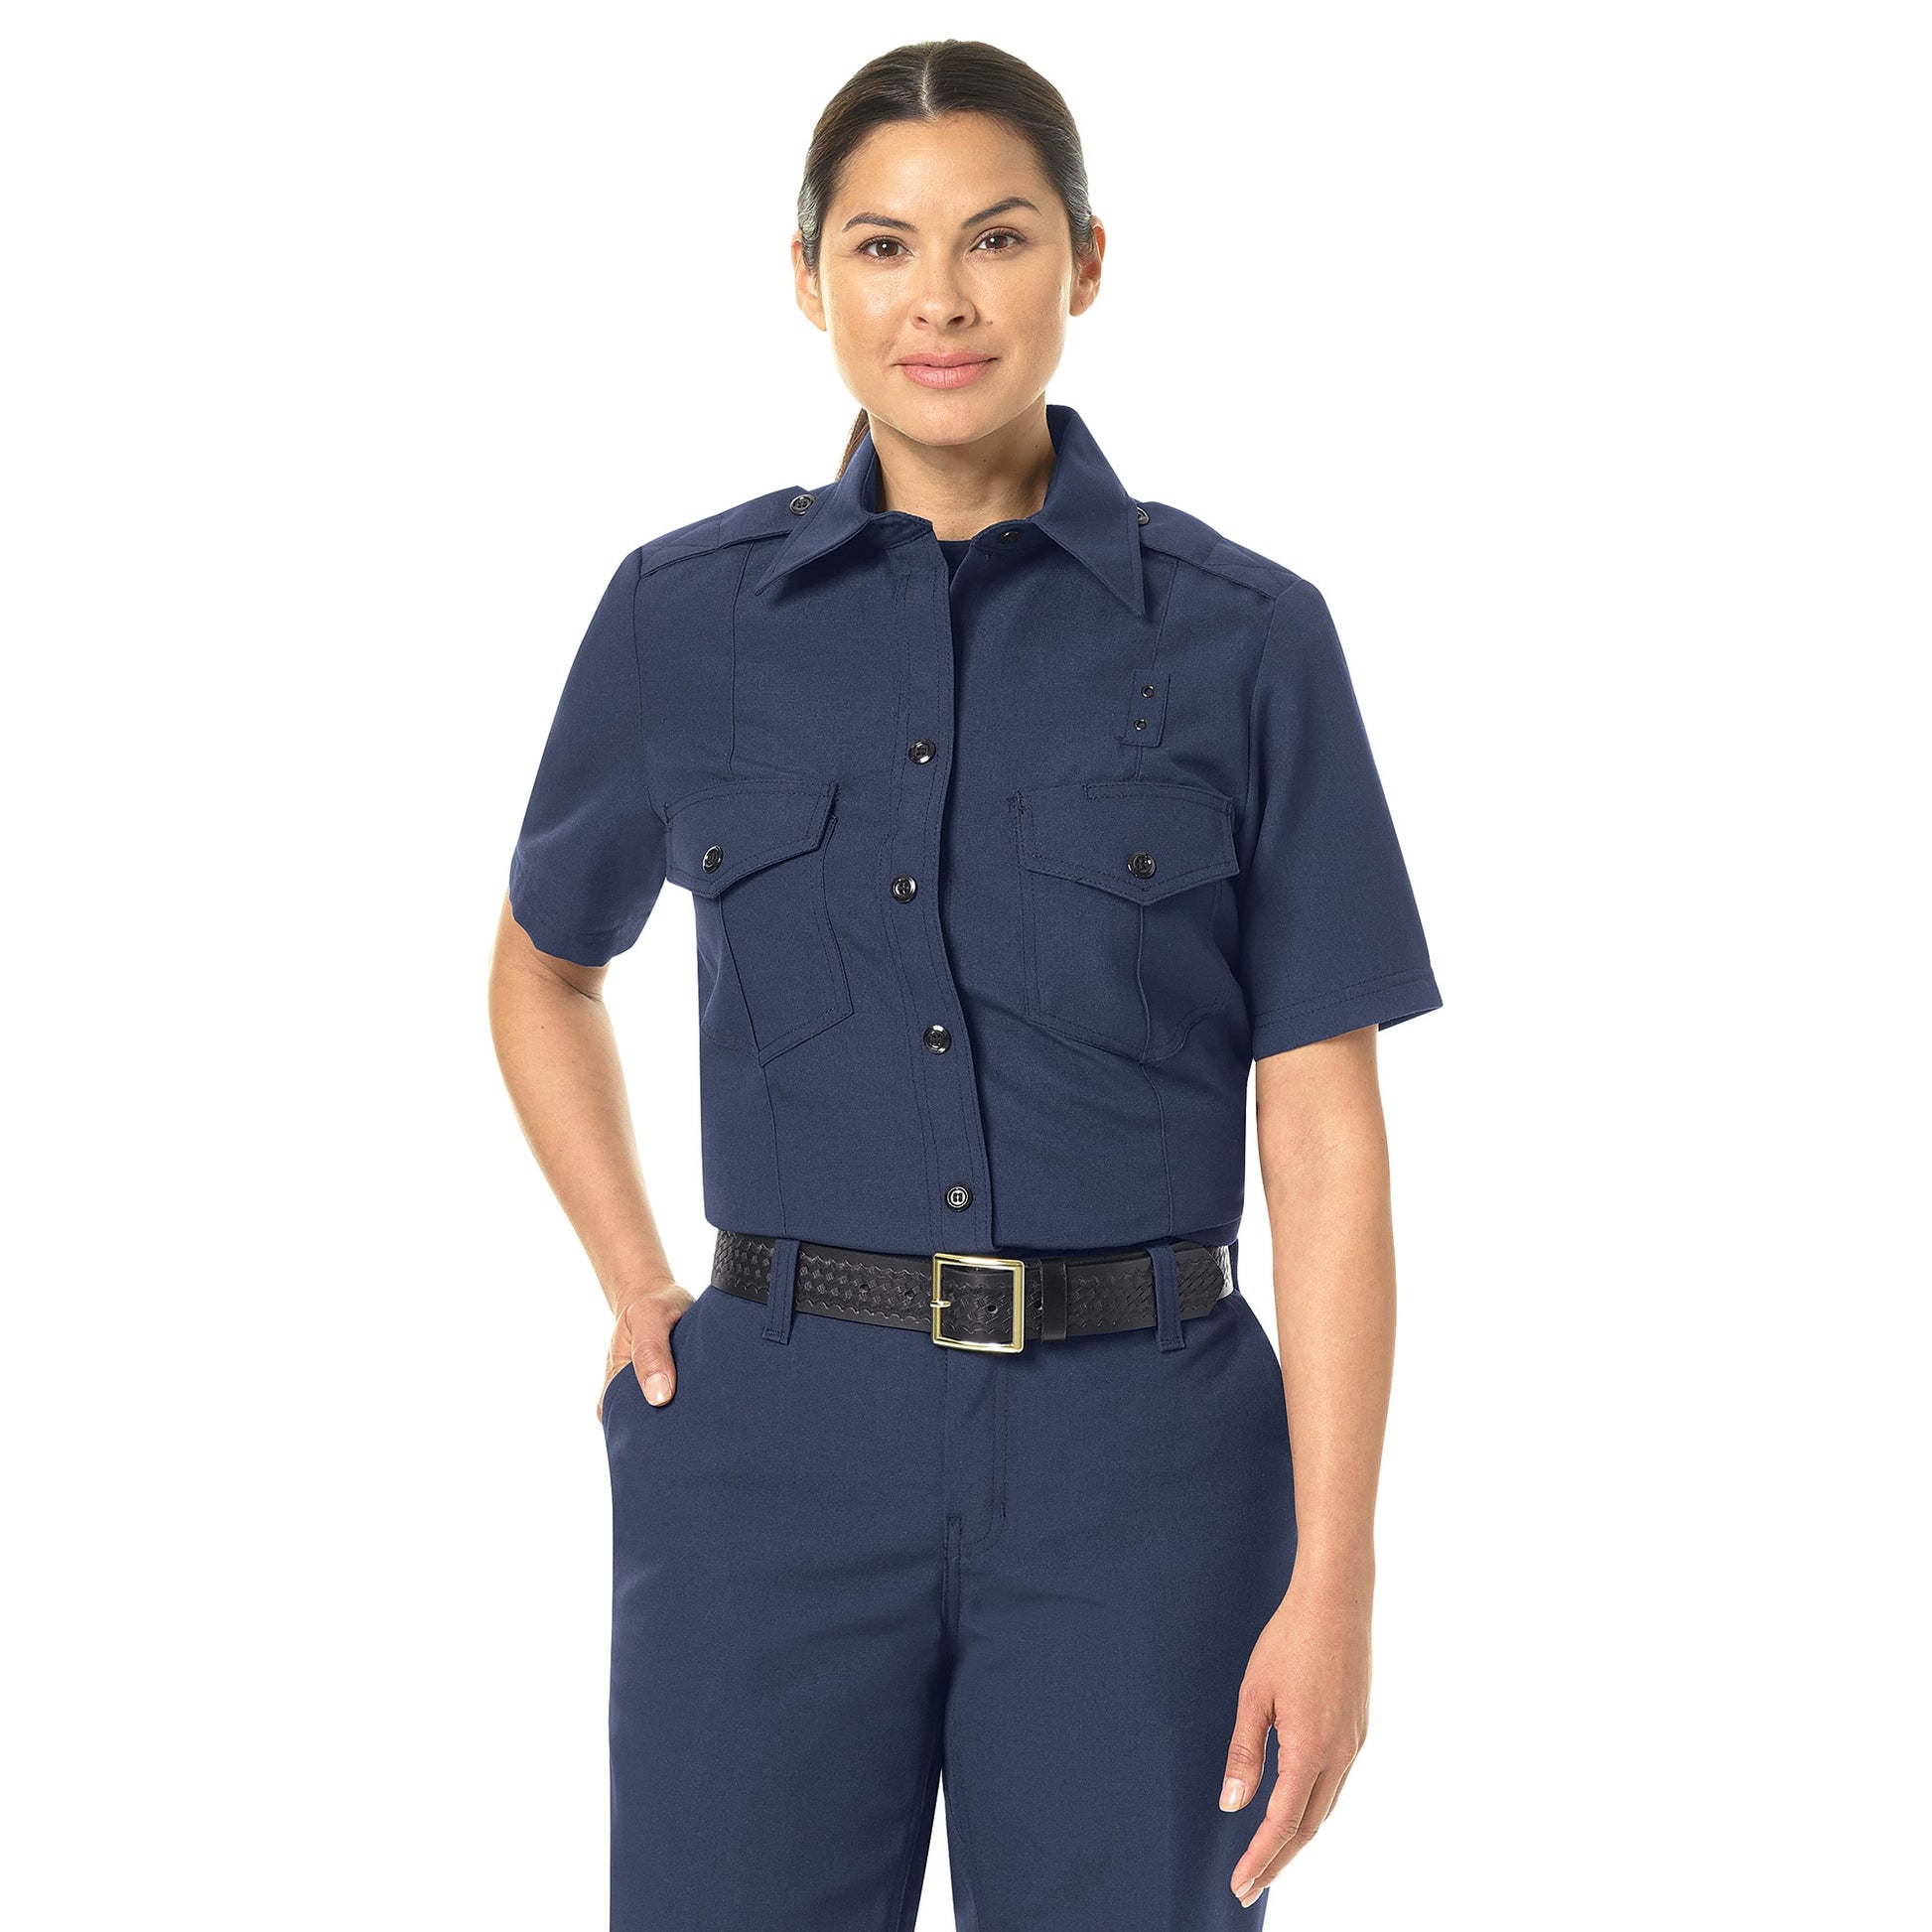 Women's Classic Fire Chief Shirt